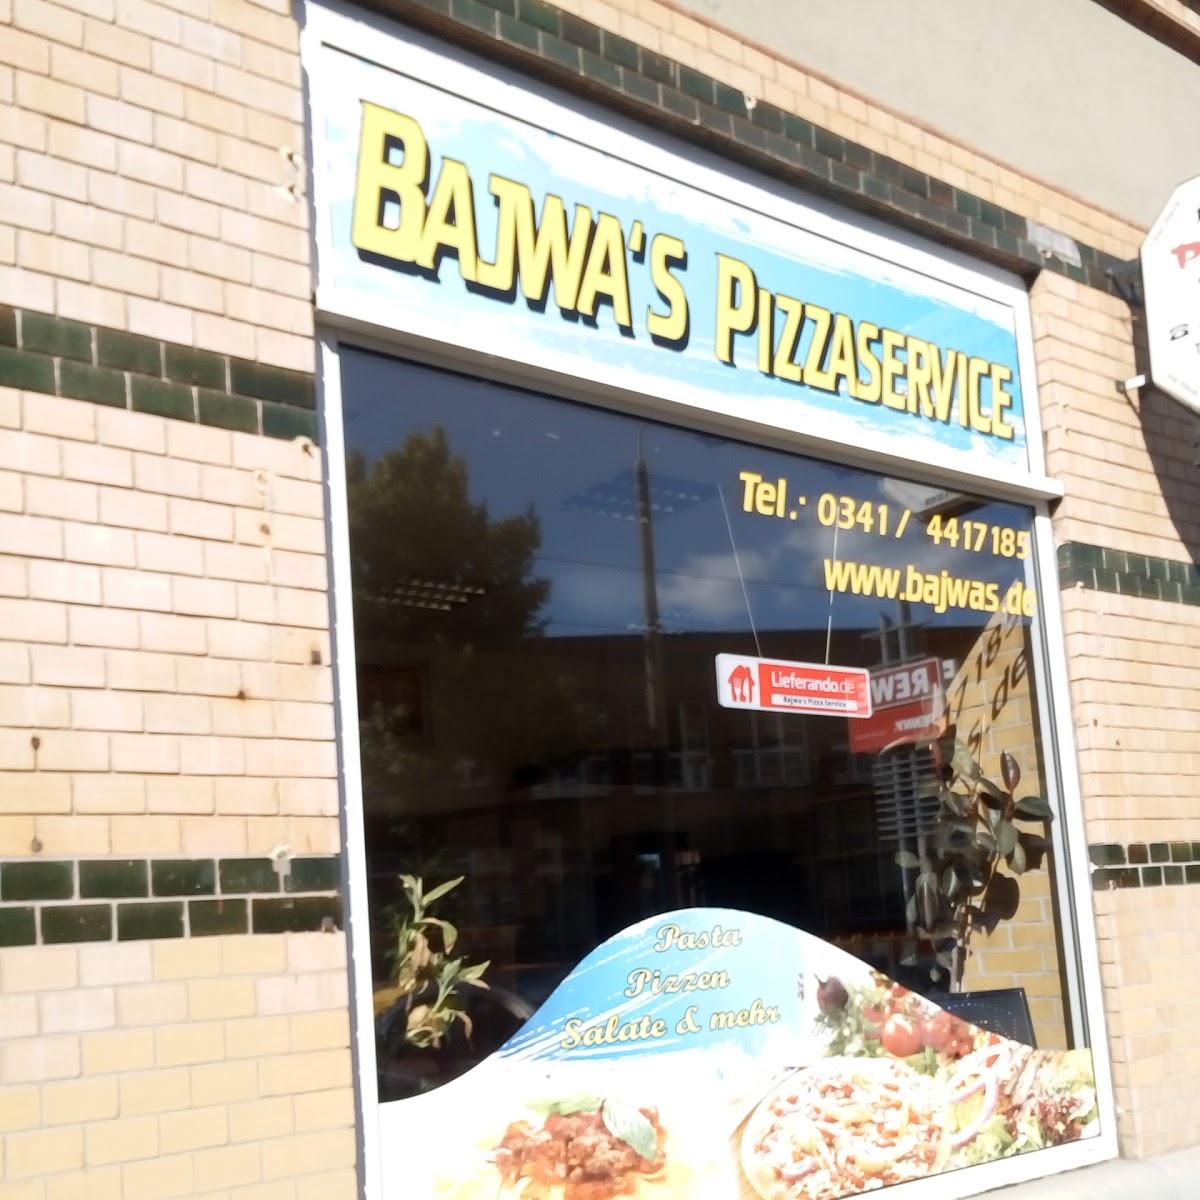 Bajwas Pizza Service